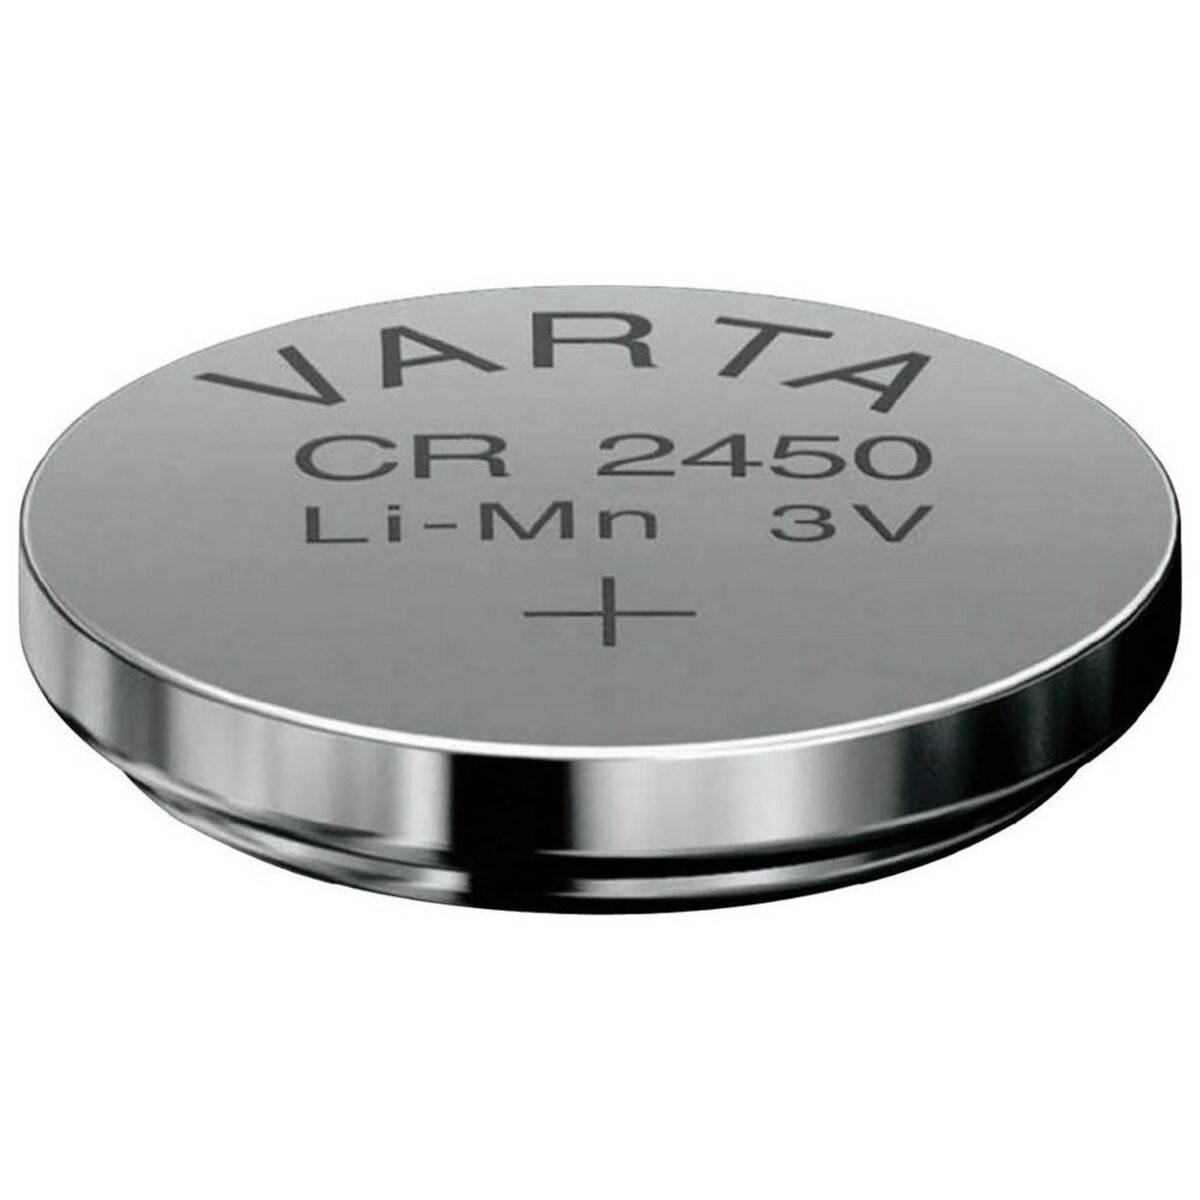 Lot de 8 piles bouton CR2450 3 V au lithium CR 2450 : .com